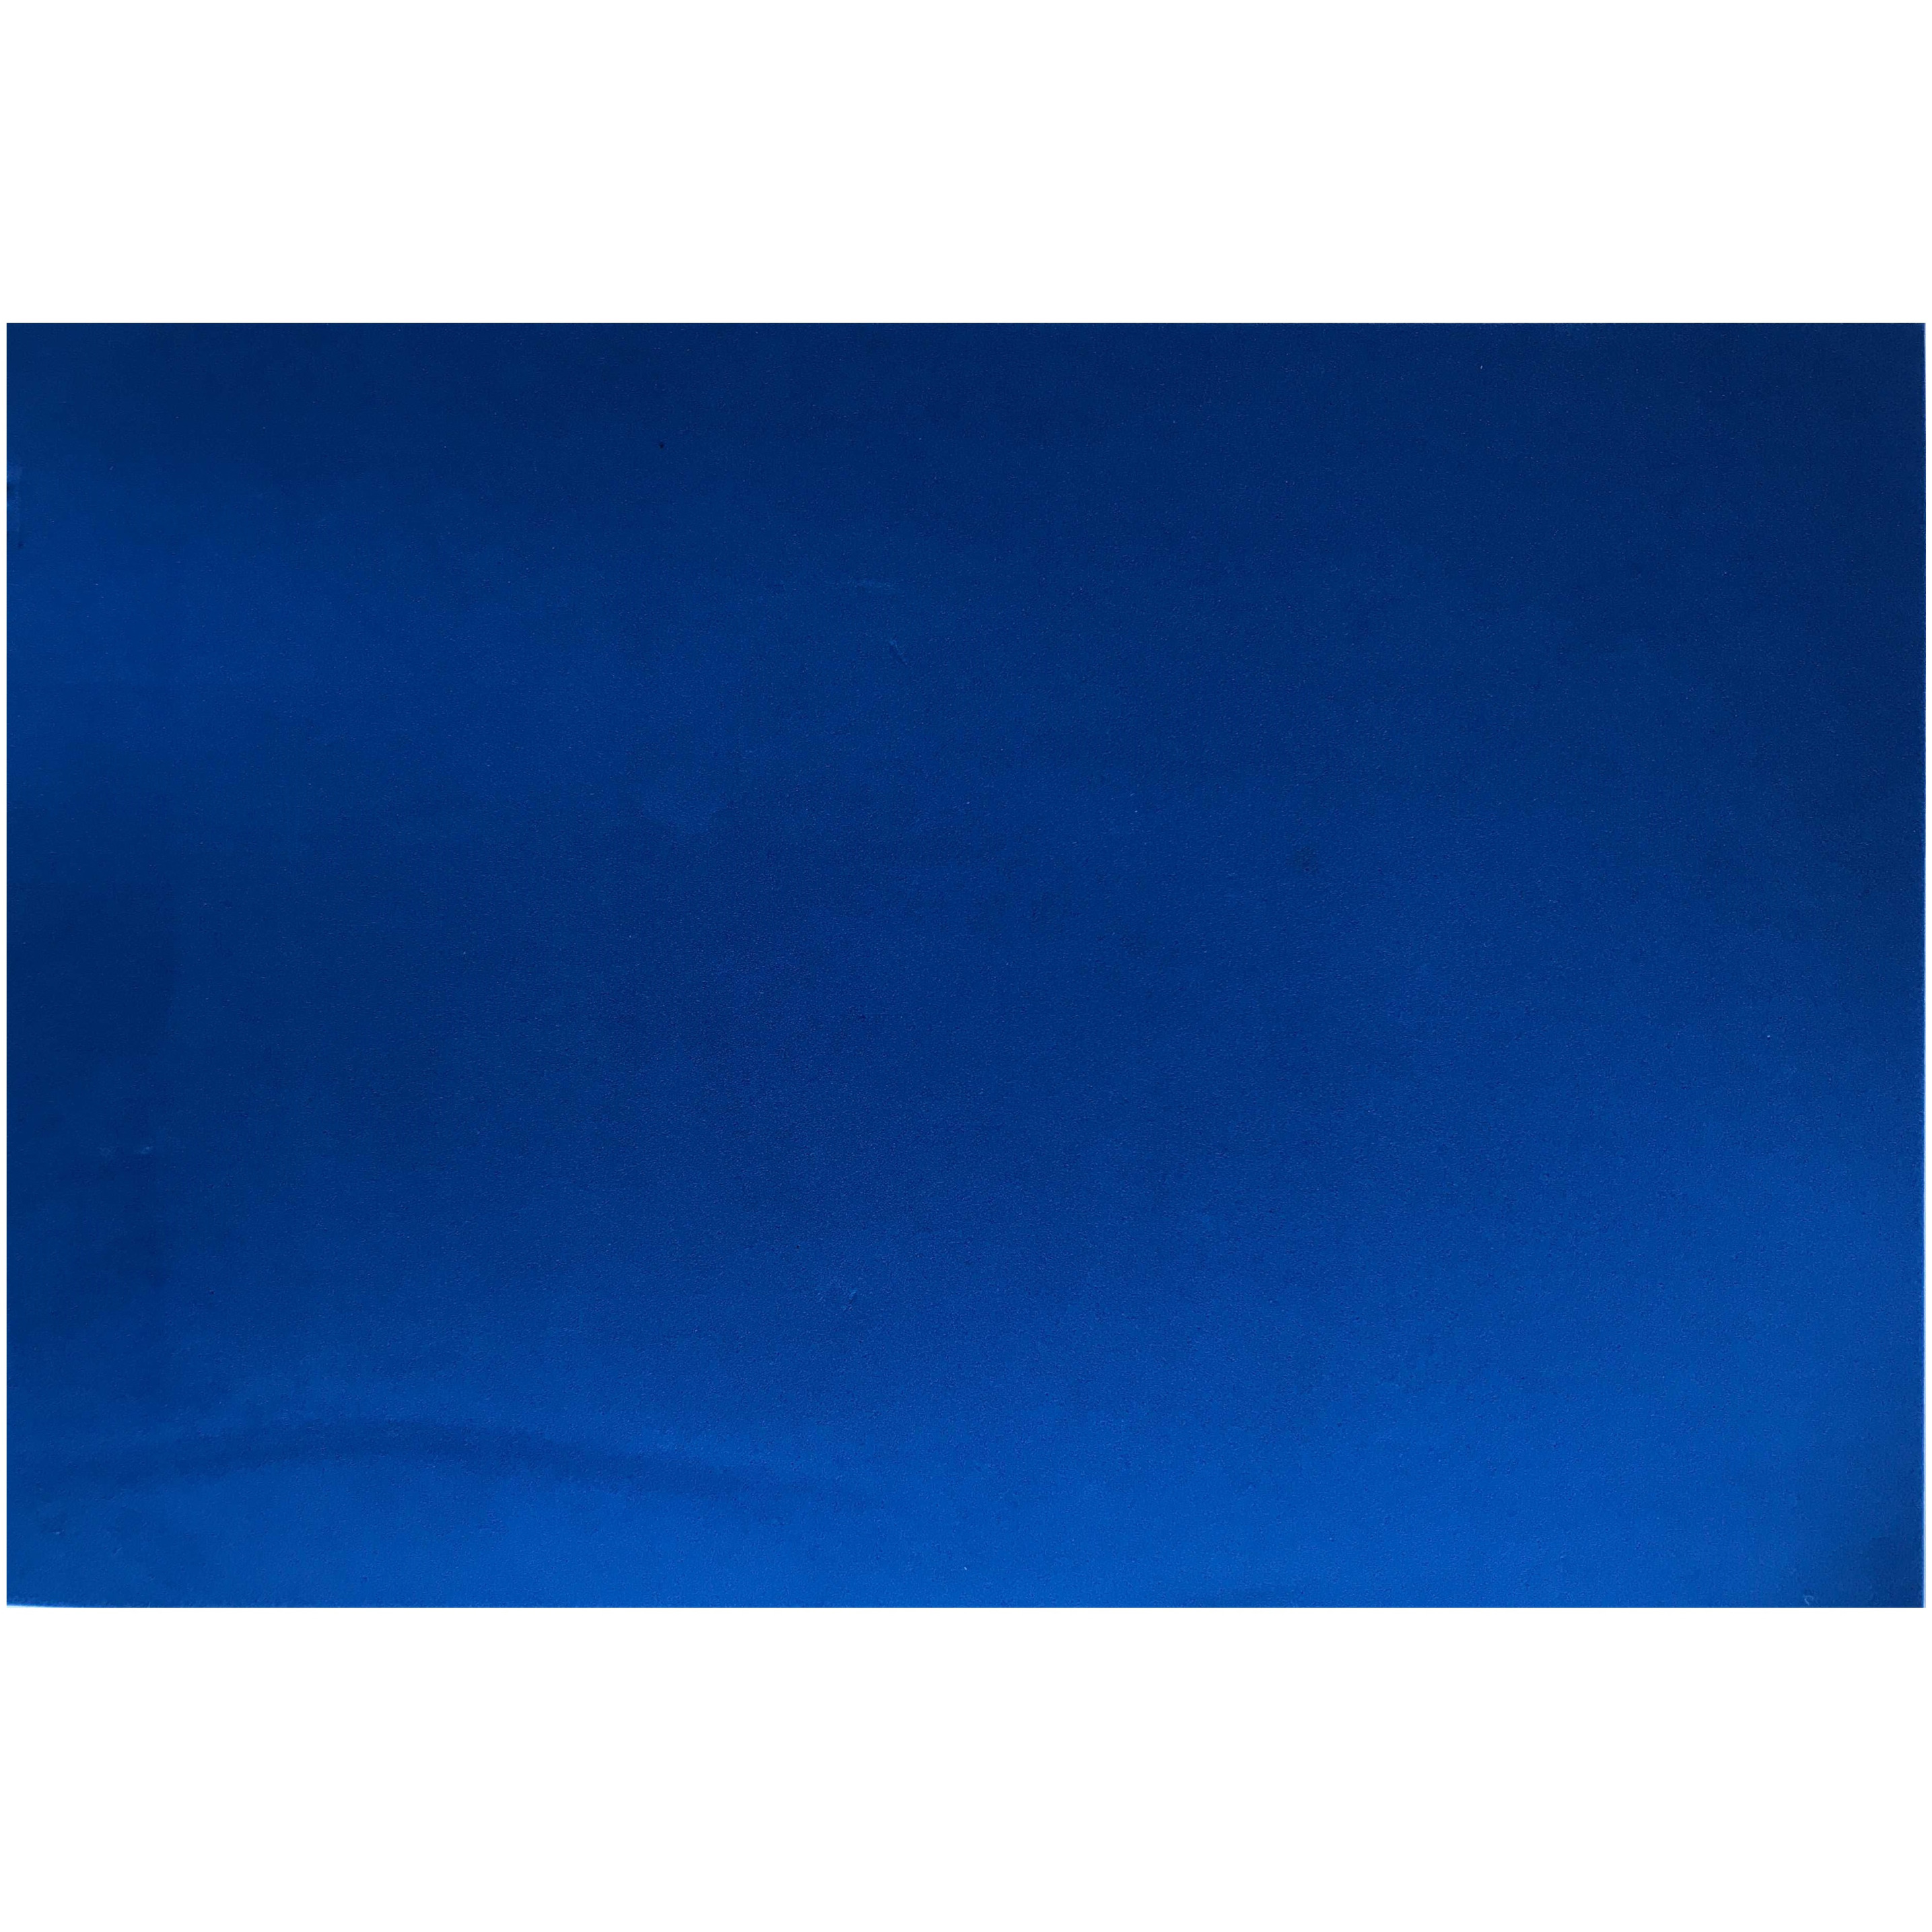 Crepla knutsel foam rubber blauw 20 x 30 cm